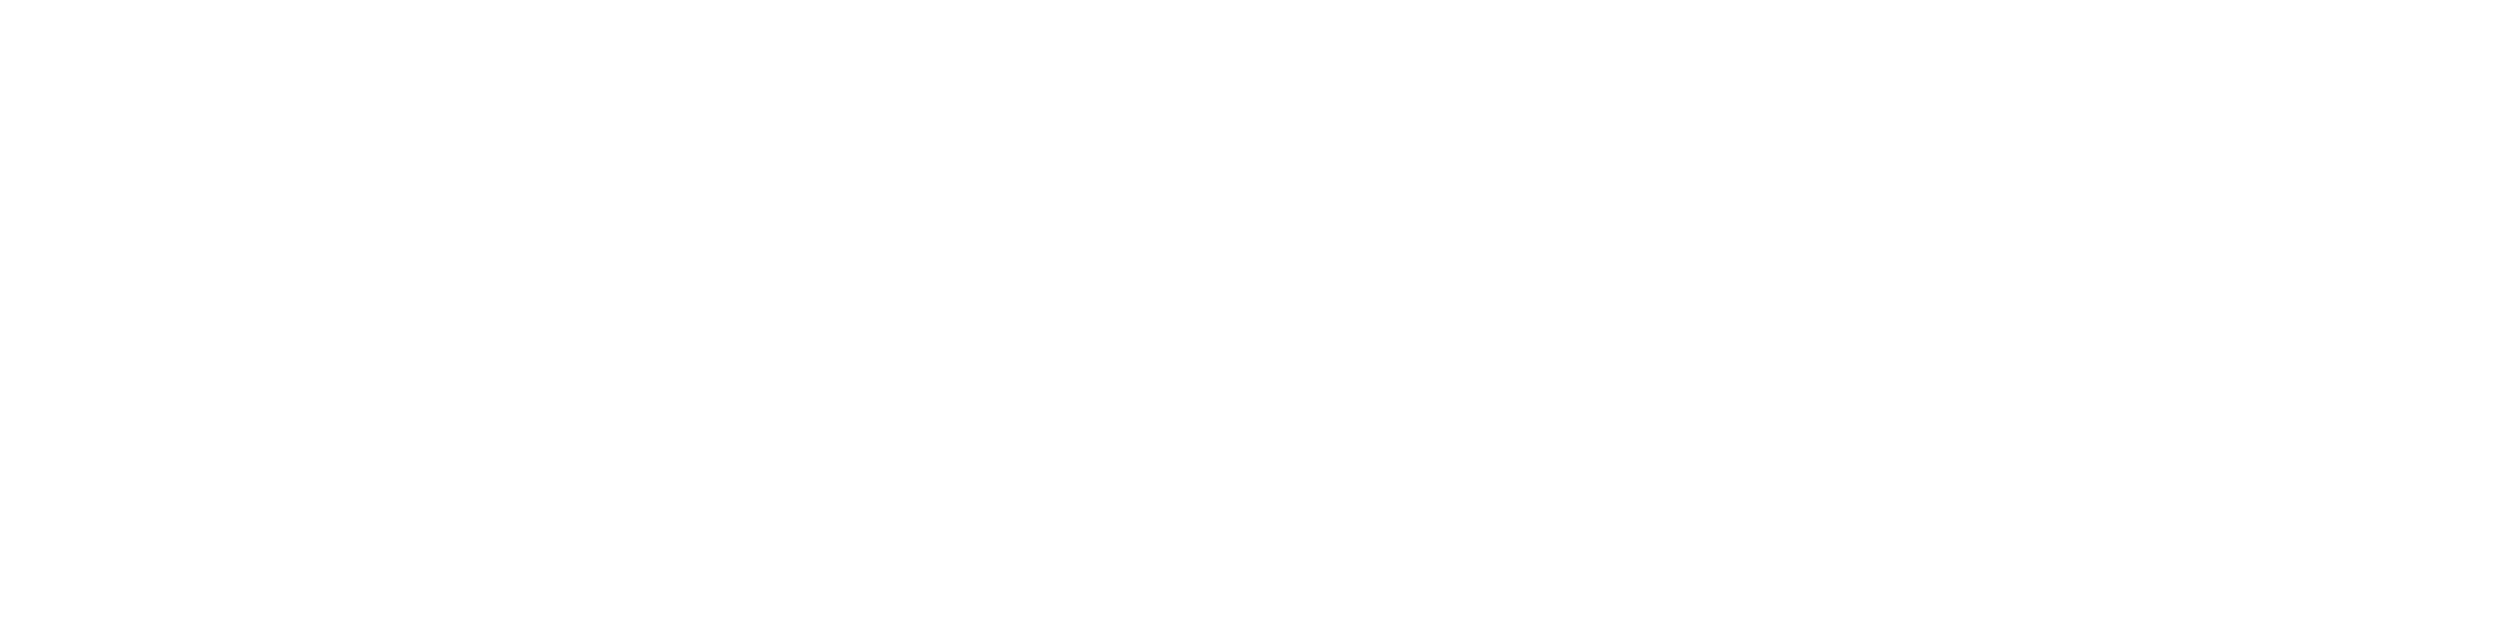 Claranet Logo white